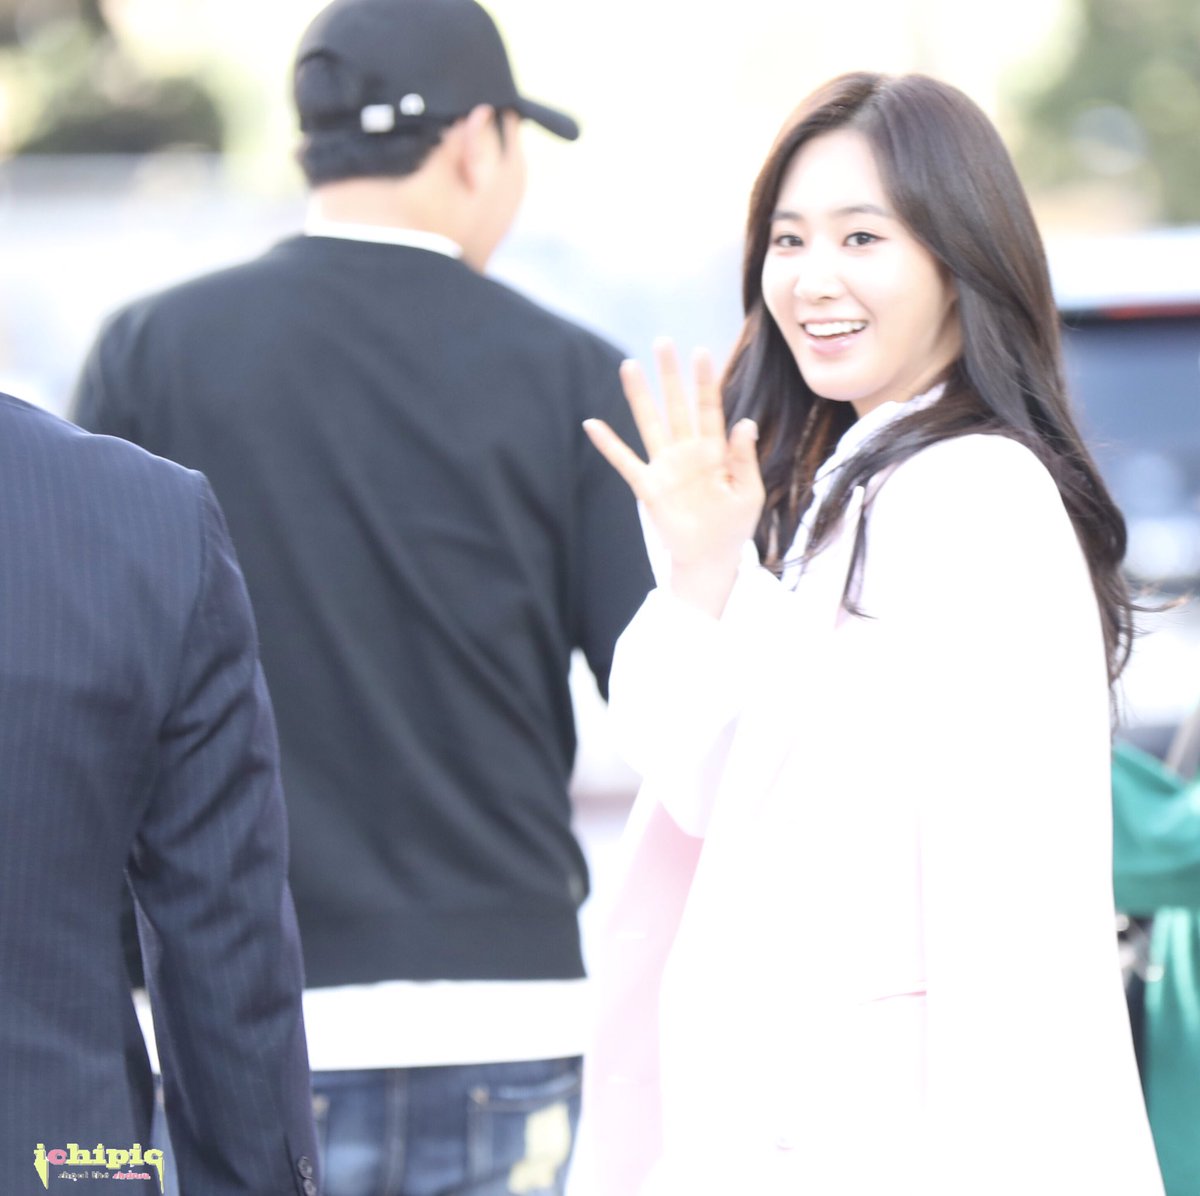 [PIC][09-10-2016]Yuri tham dự buổi Fansign thứ 2 cho thương hiệu nước hoa "BVLGARI Rose Goldea" tại Myeongdong Lotte Duty Free vào chiều nay - Page 2 CuUOd3HVYAIGxws